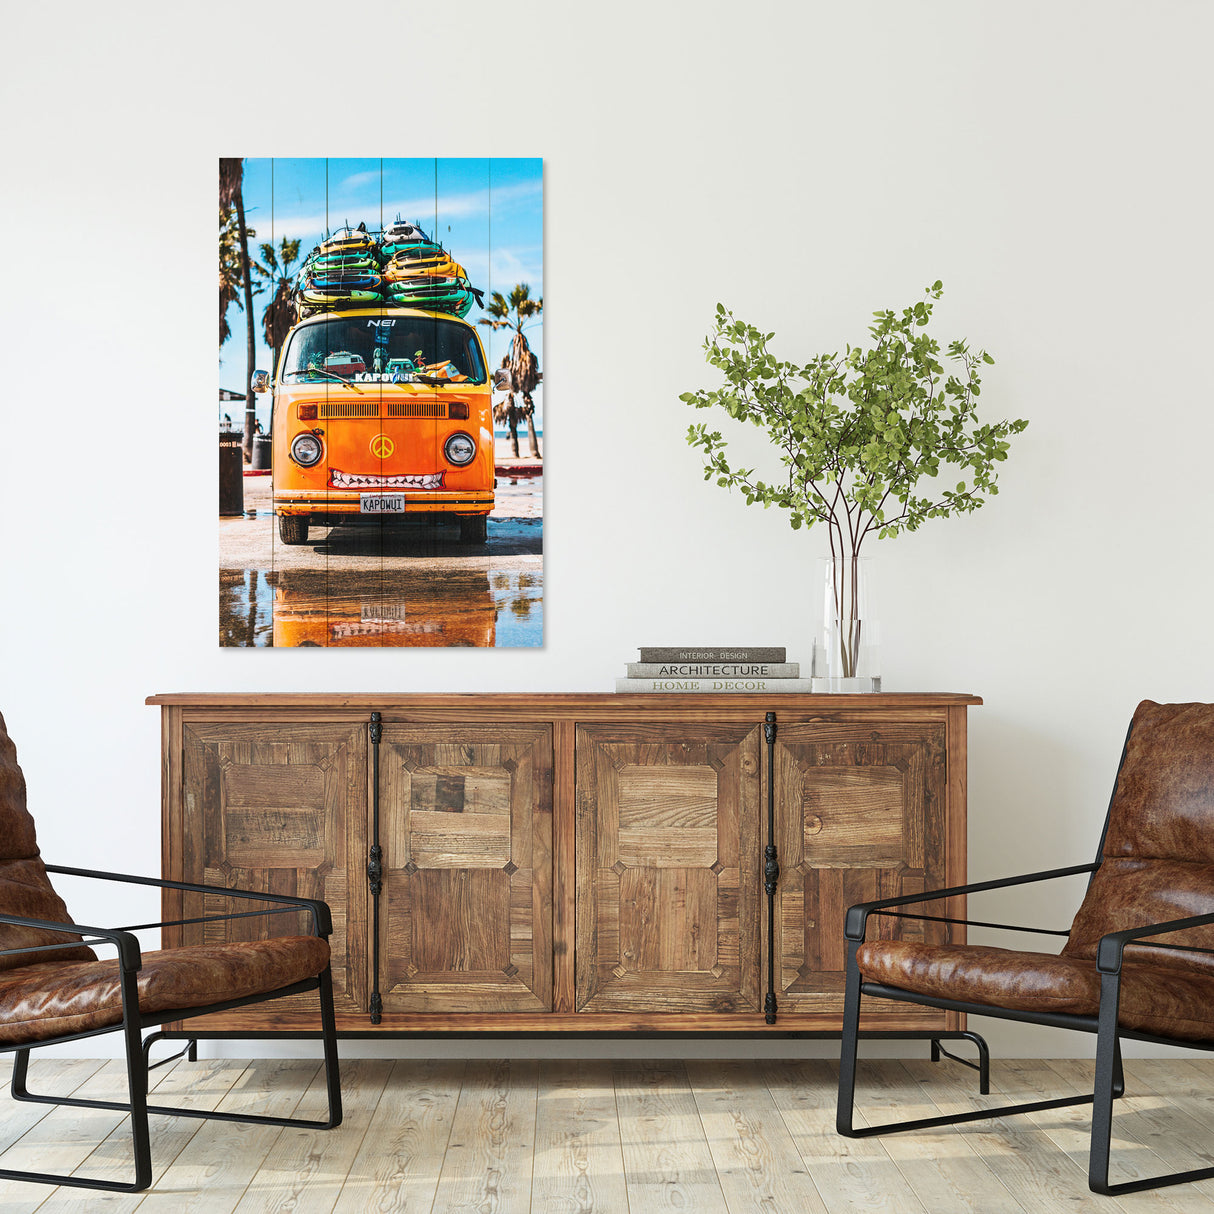 Obraz na drewnie Pomarańczowy camper - Hippie